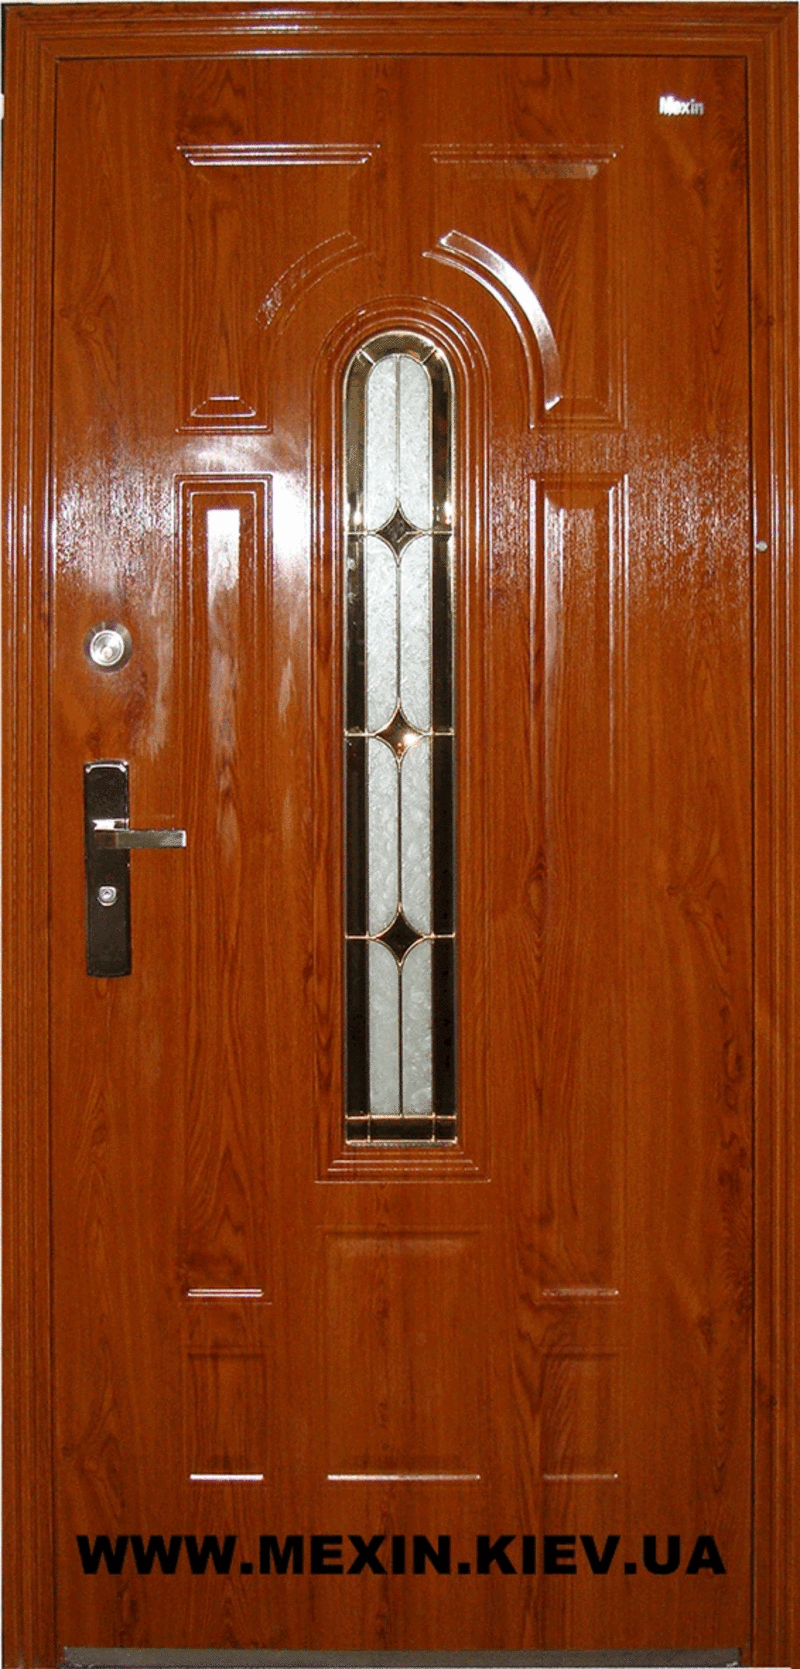 Входные стальные утепленные двери MEXIN 5